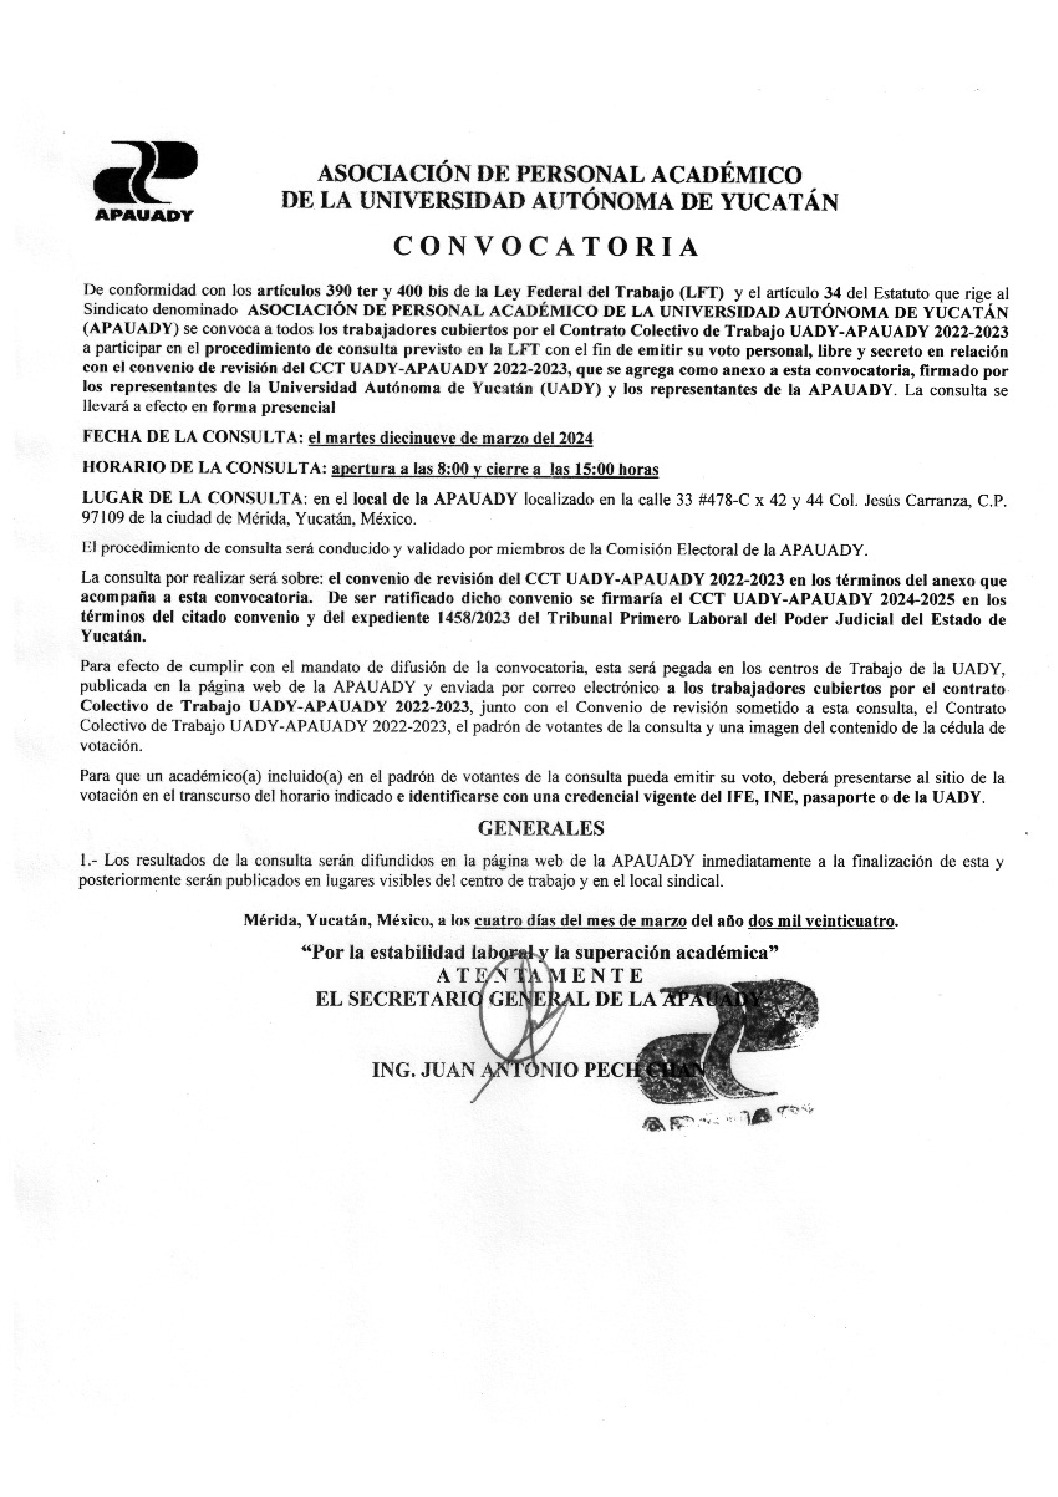 Featured image for “Convocatoria Consulta Revisión del CCT UADY-APAUADY 2022-2023”